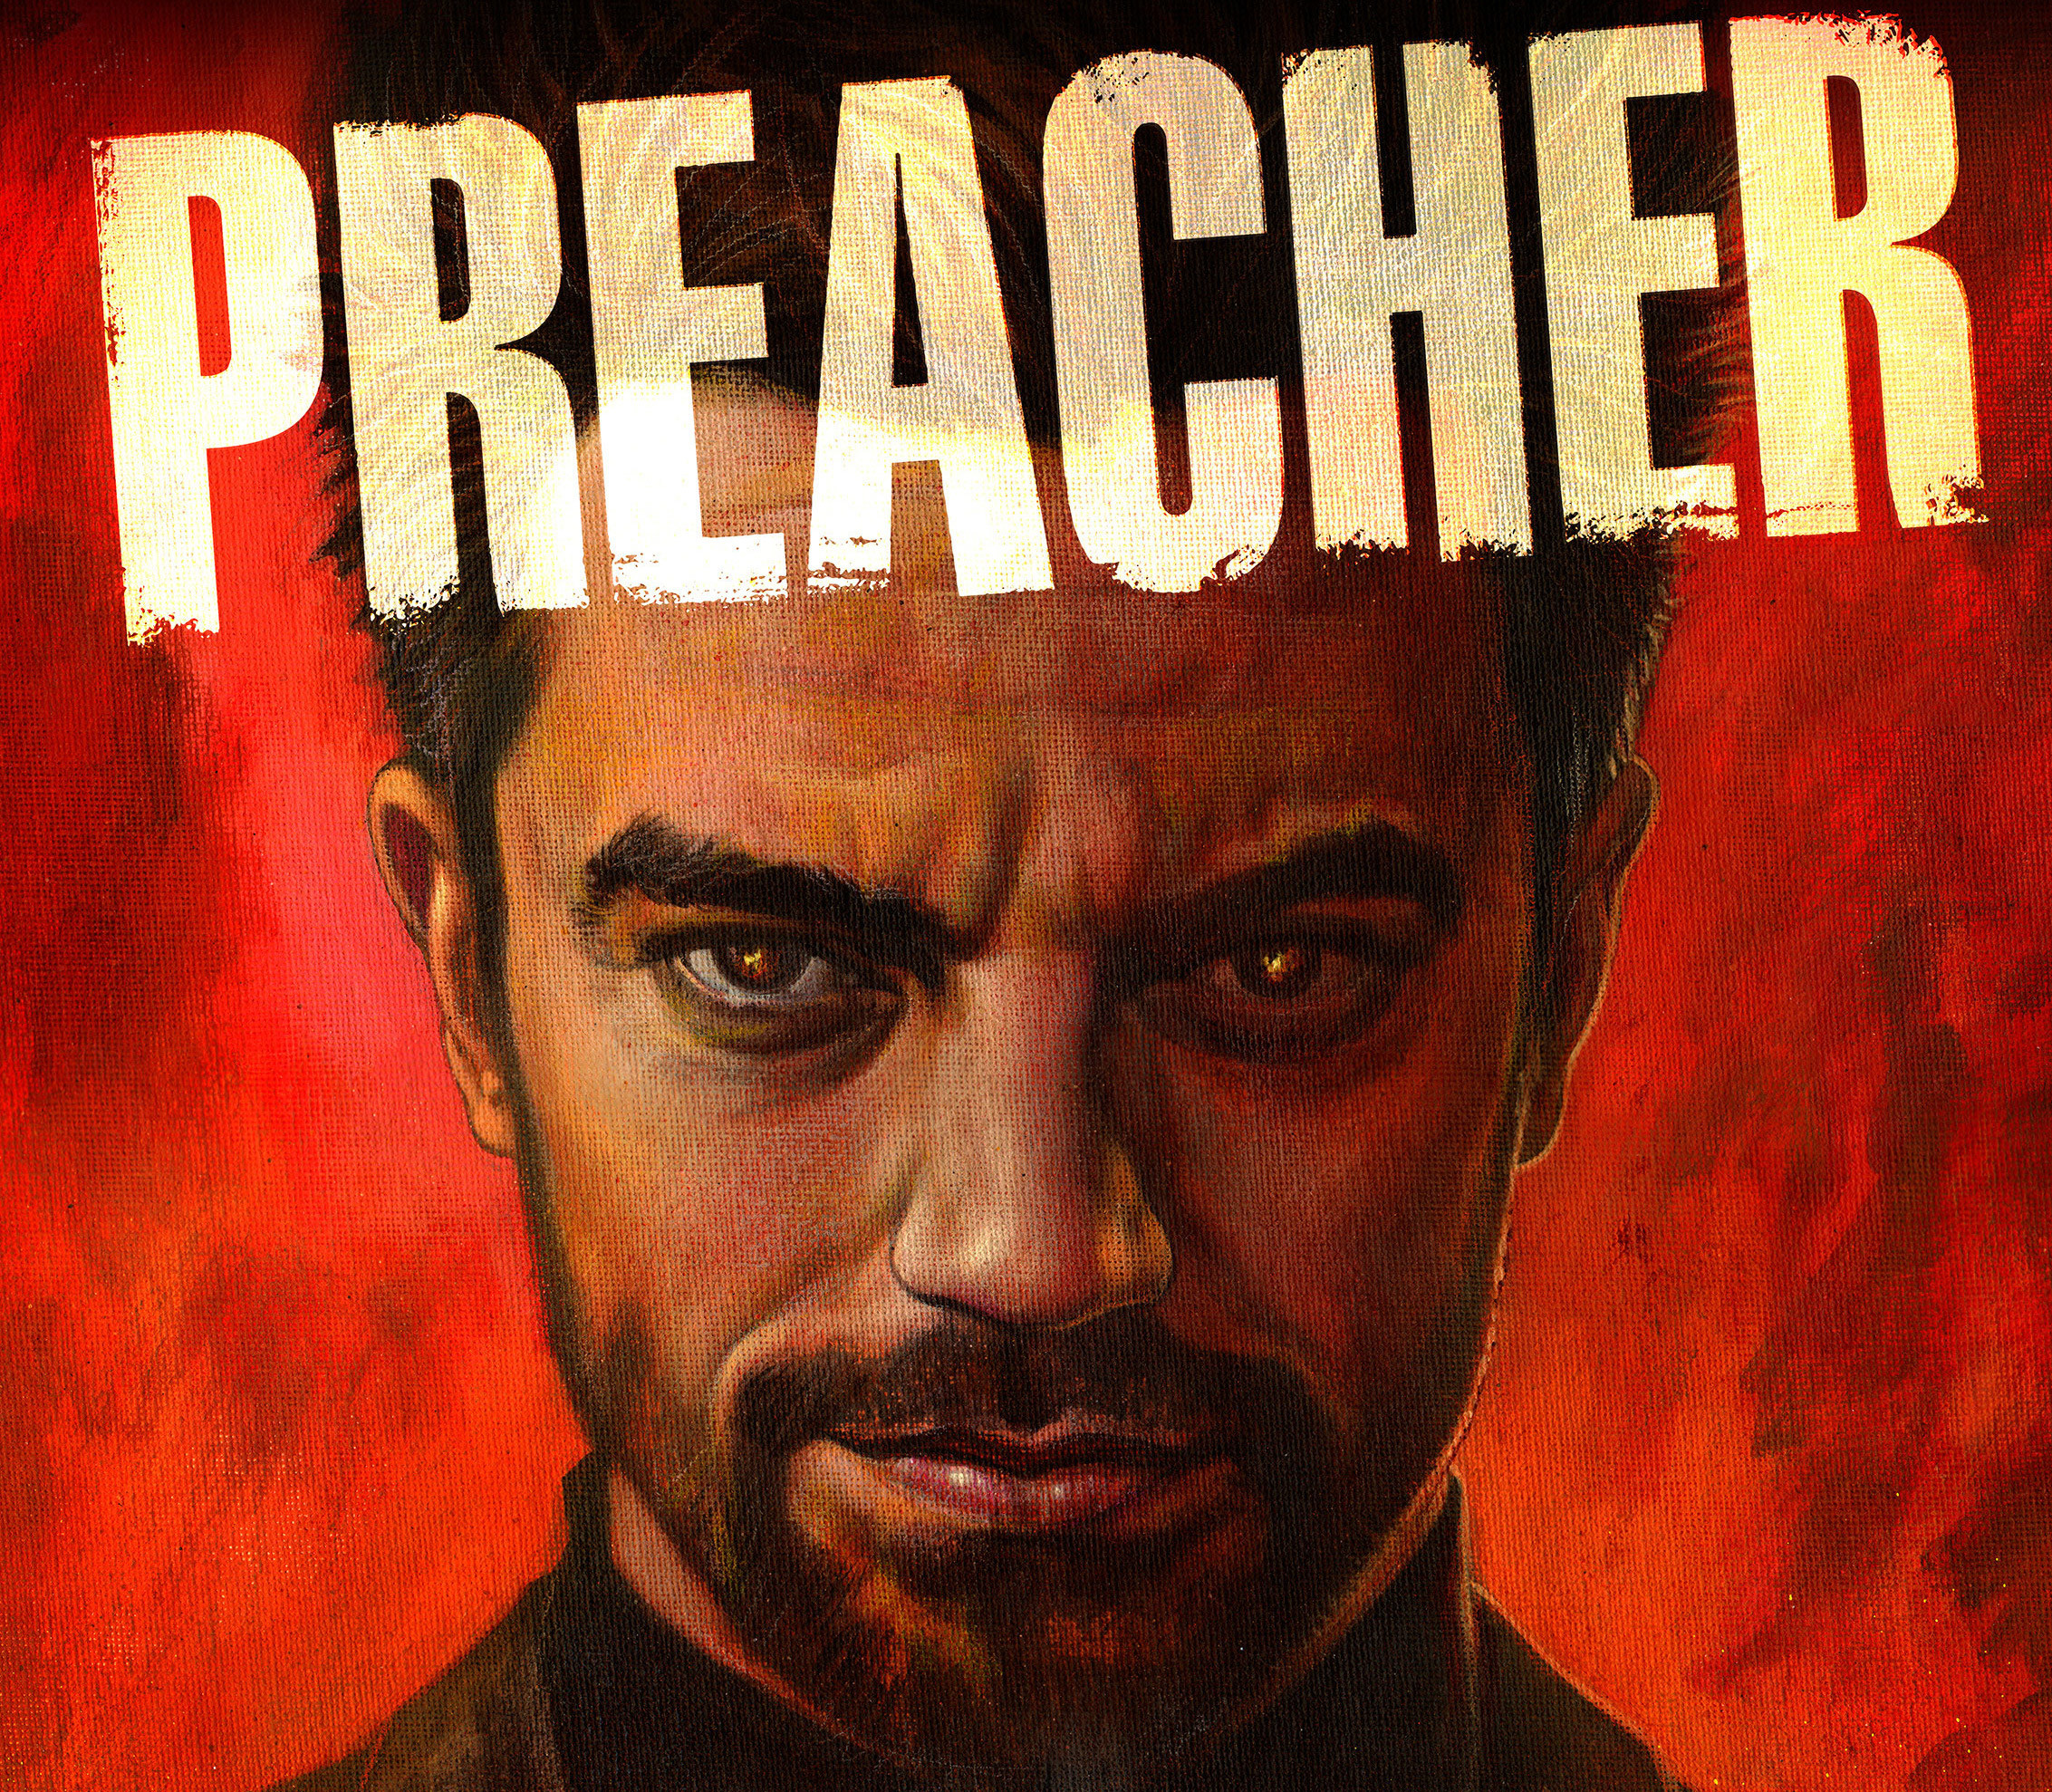 2265x1978 Preacher Season 4 2017 Artwork Â· Preacher Season 4 2017 Artwork Wallpaper